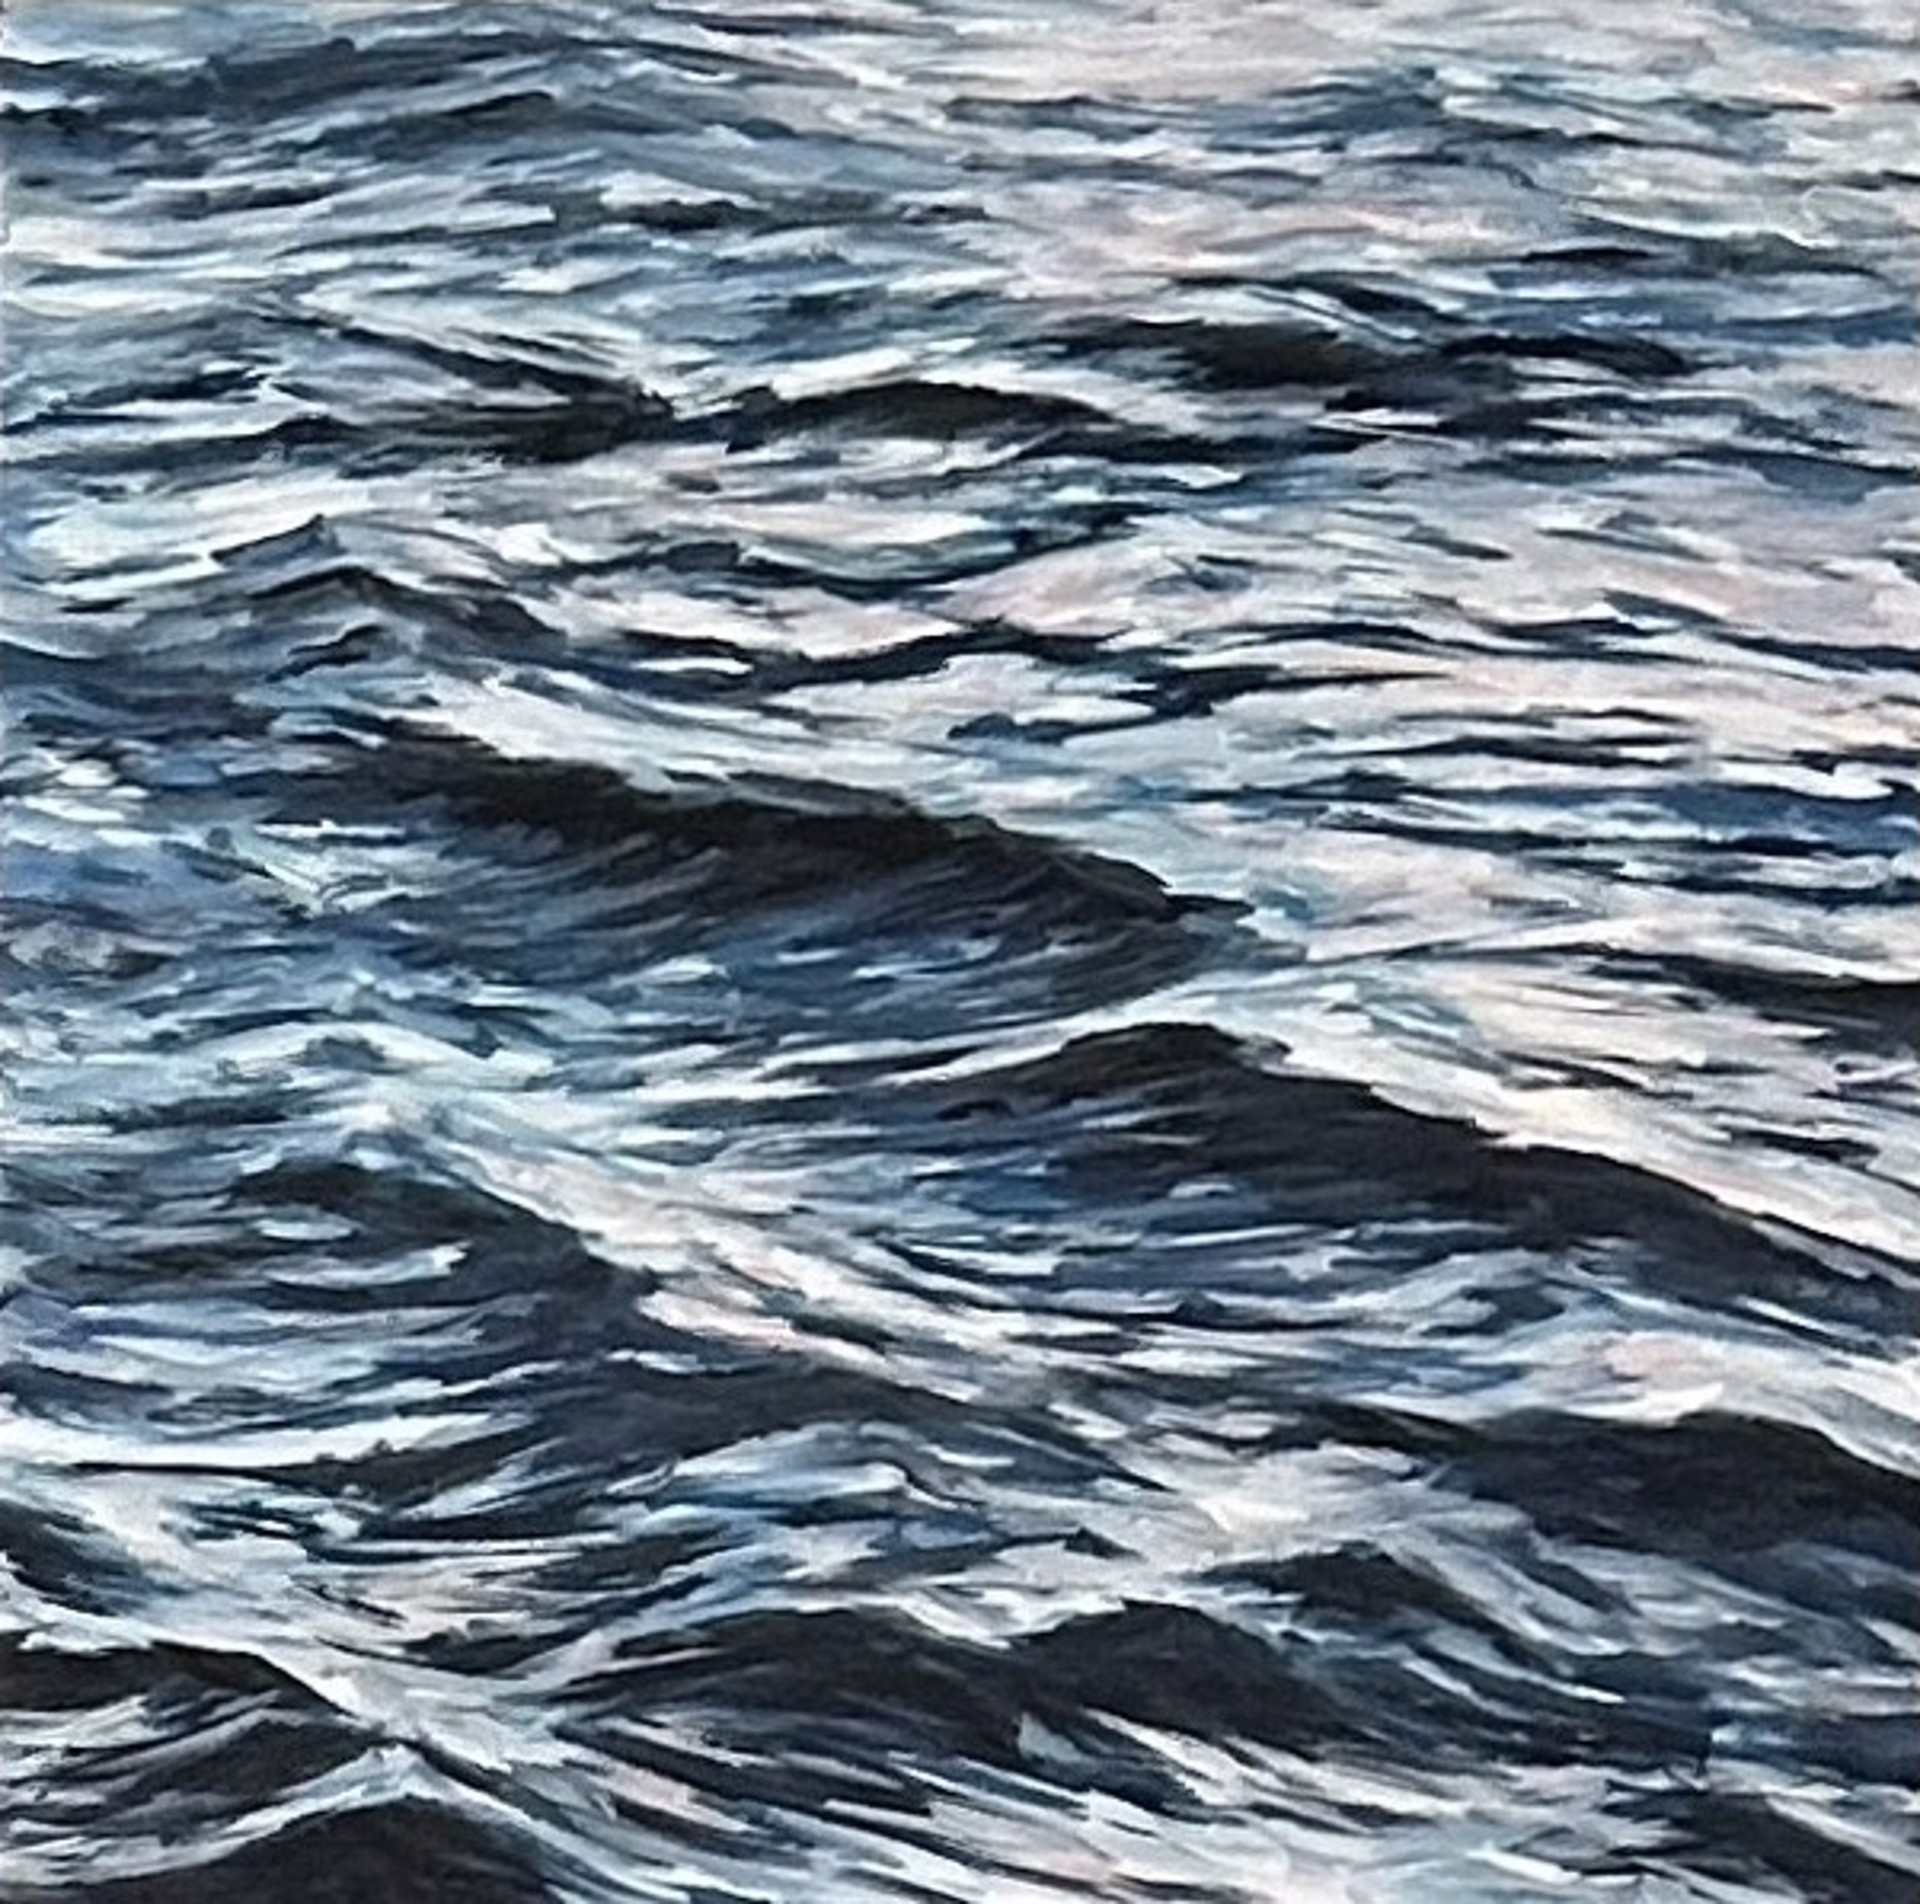 Lahaina Waves 3 by Valerie Eickmeier